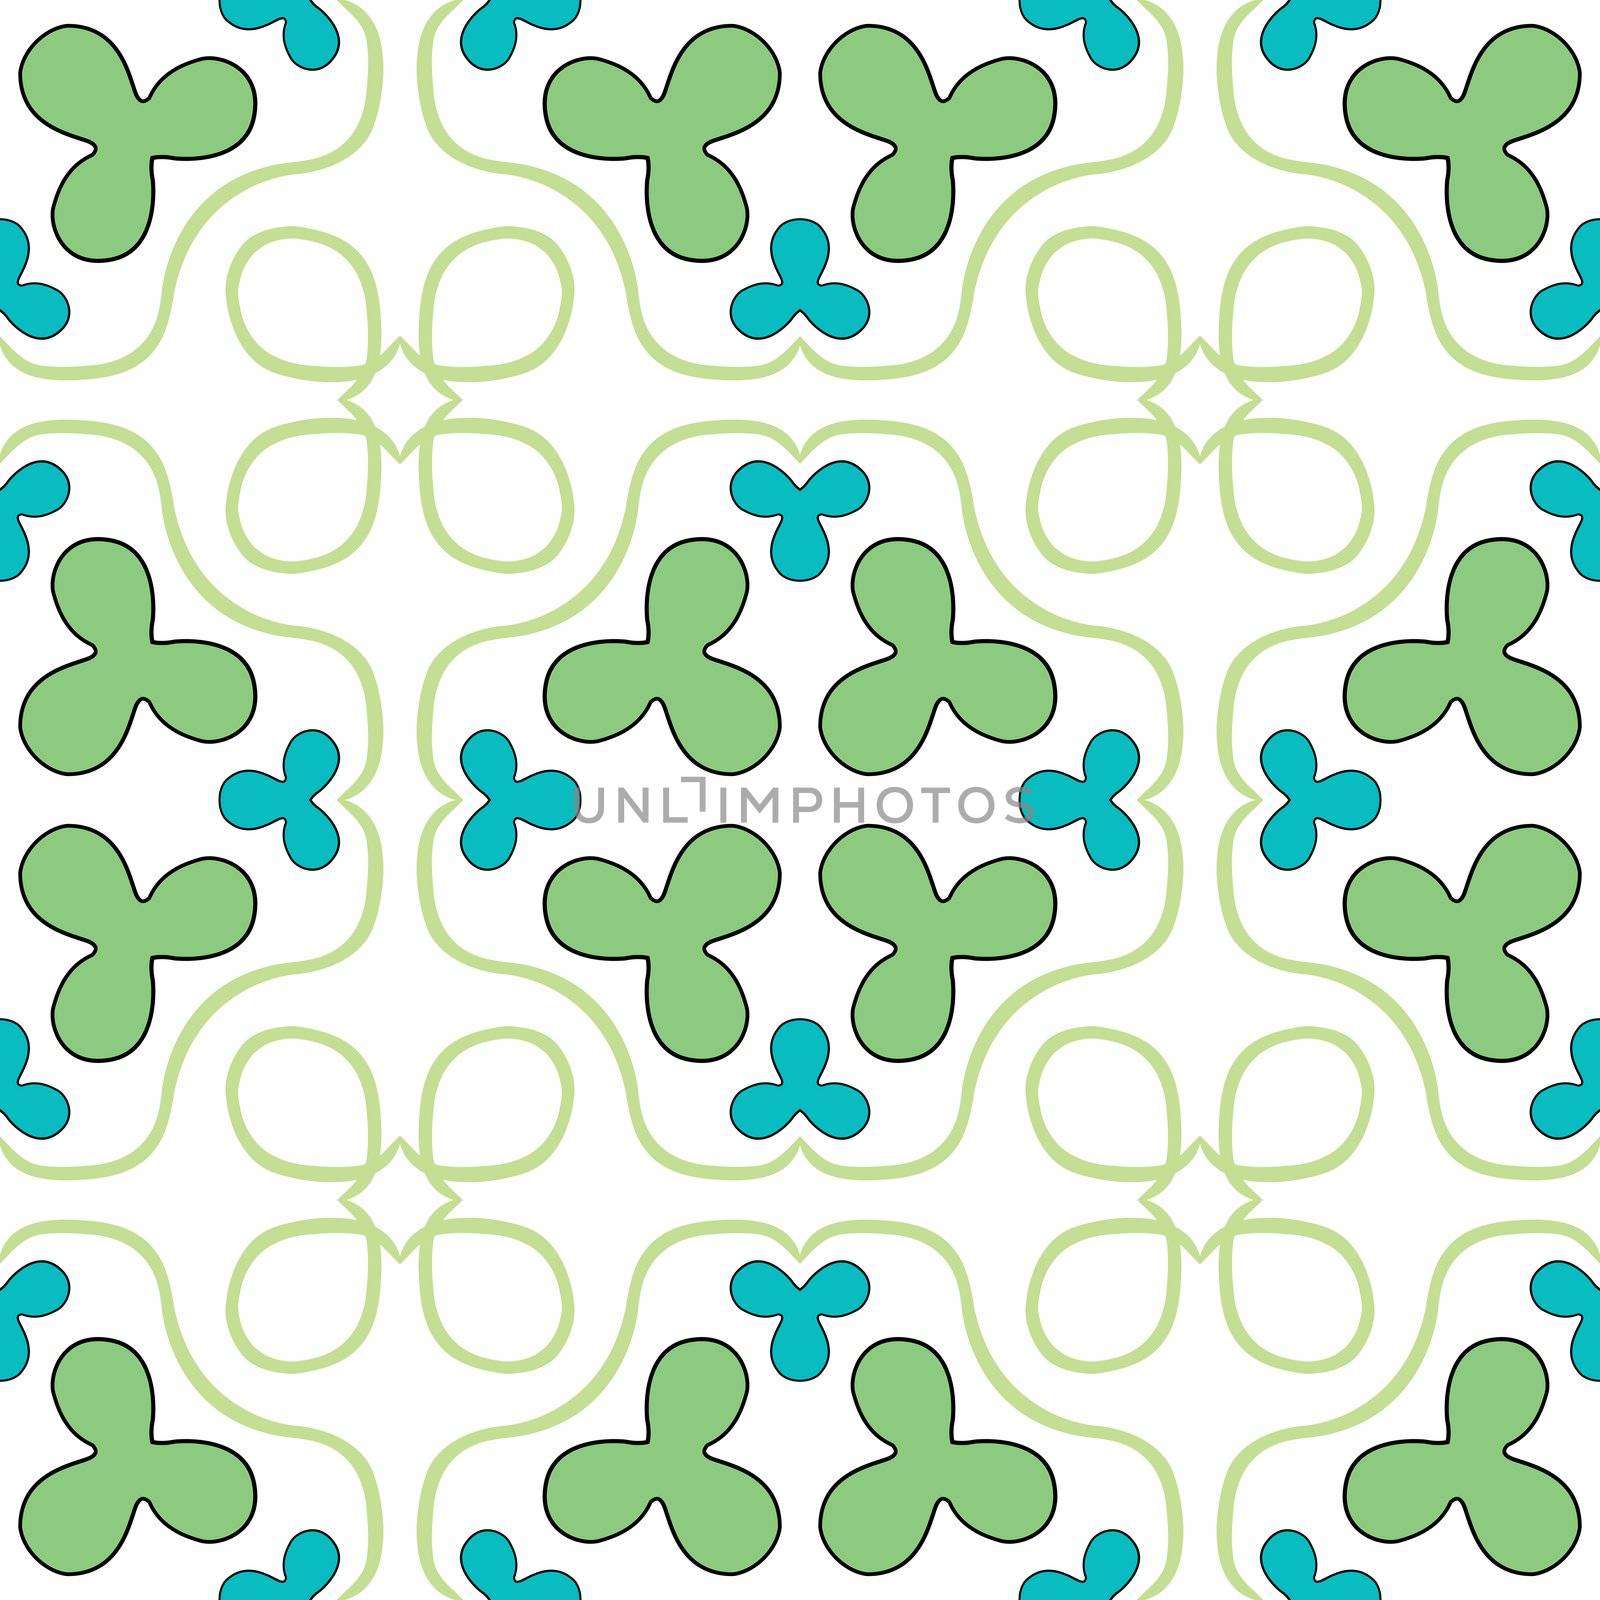 clover seamless texture by robertosch